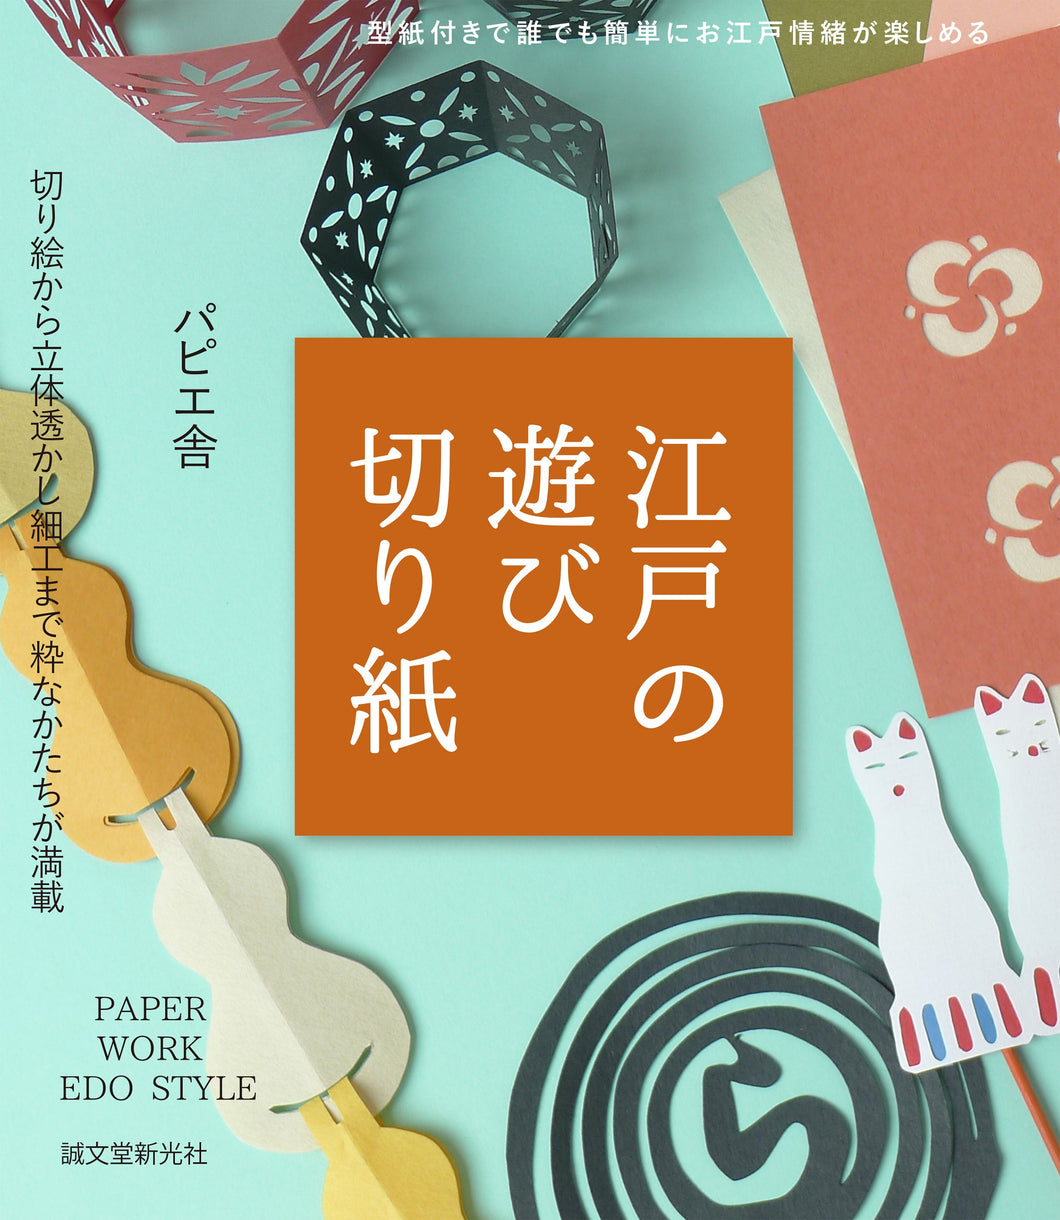 Playful paper cutouts of Edo